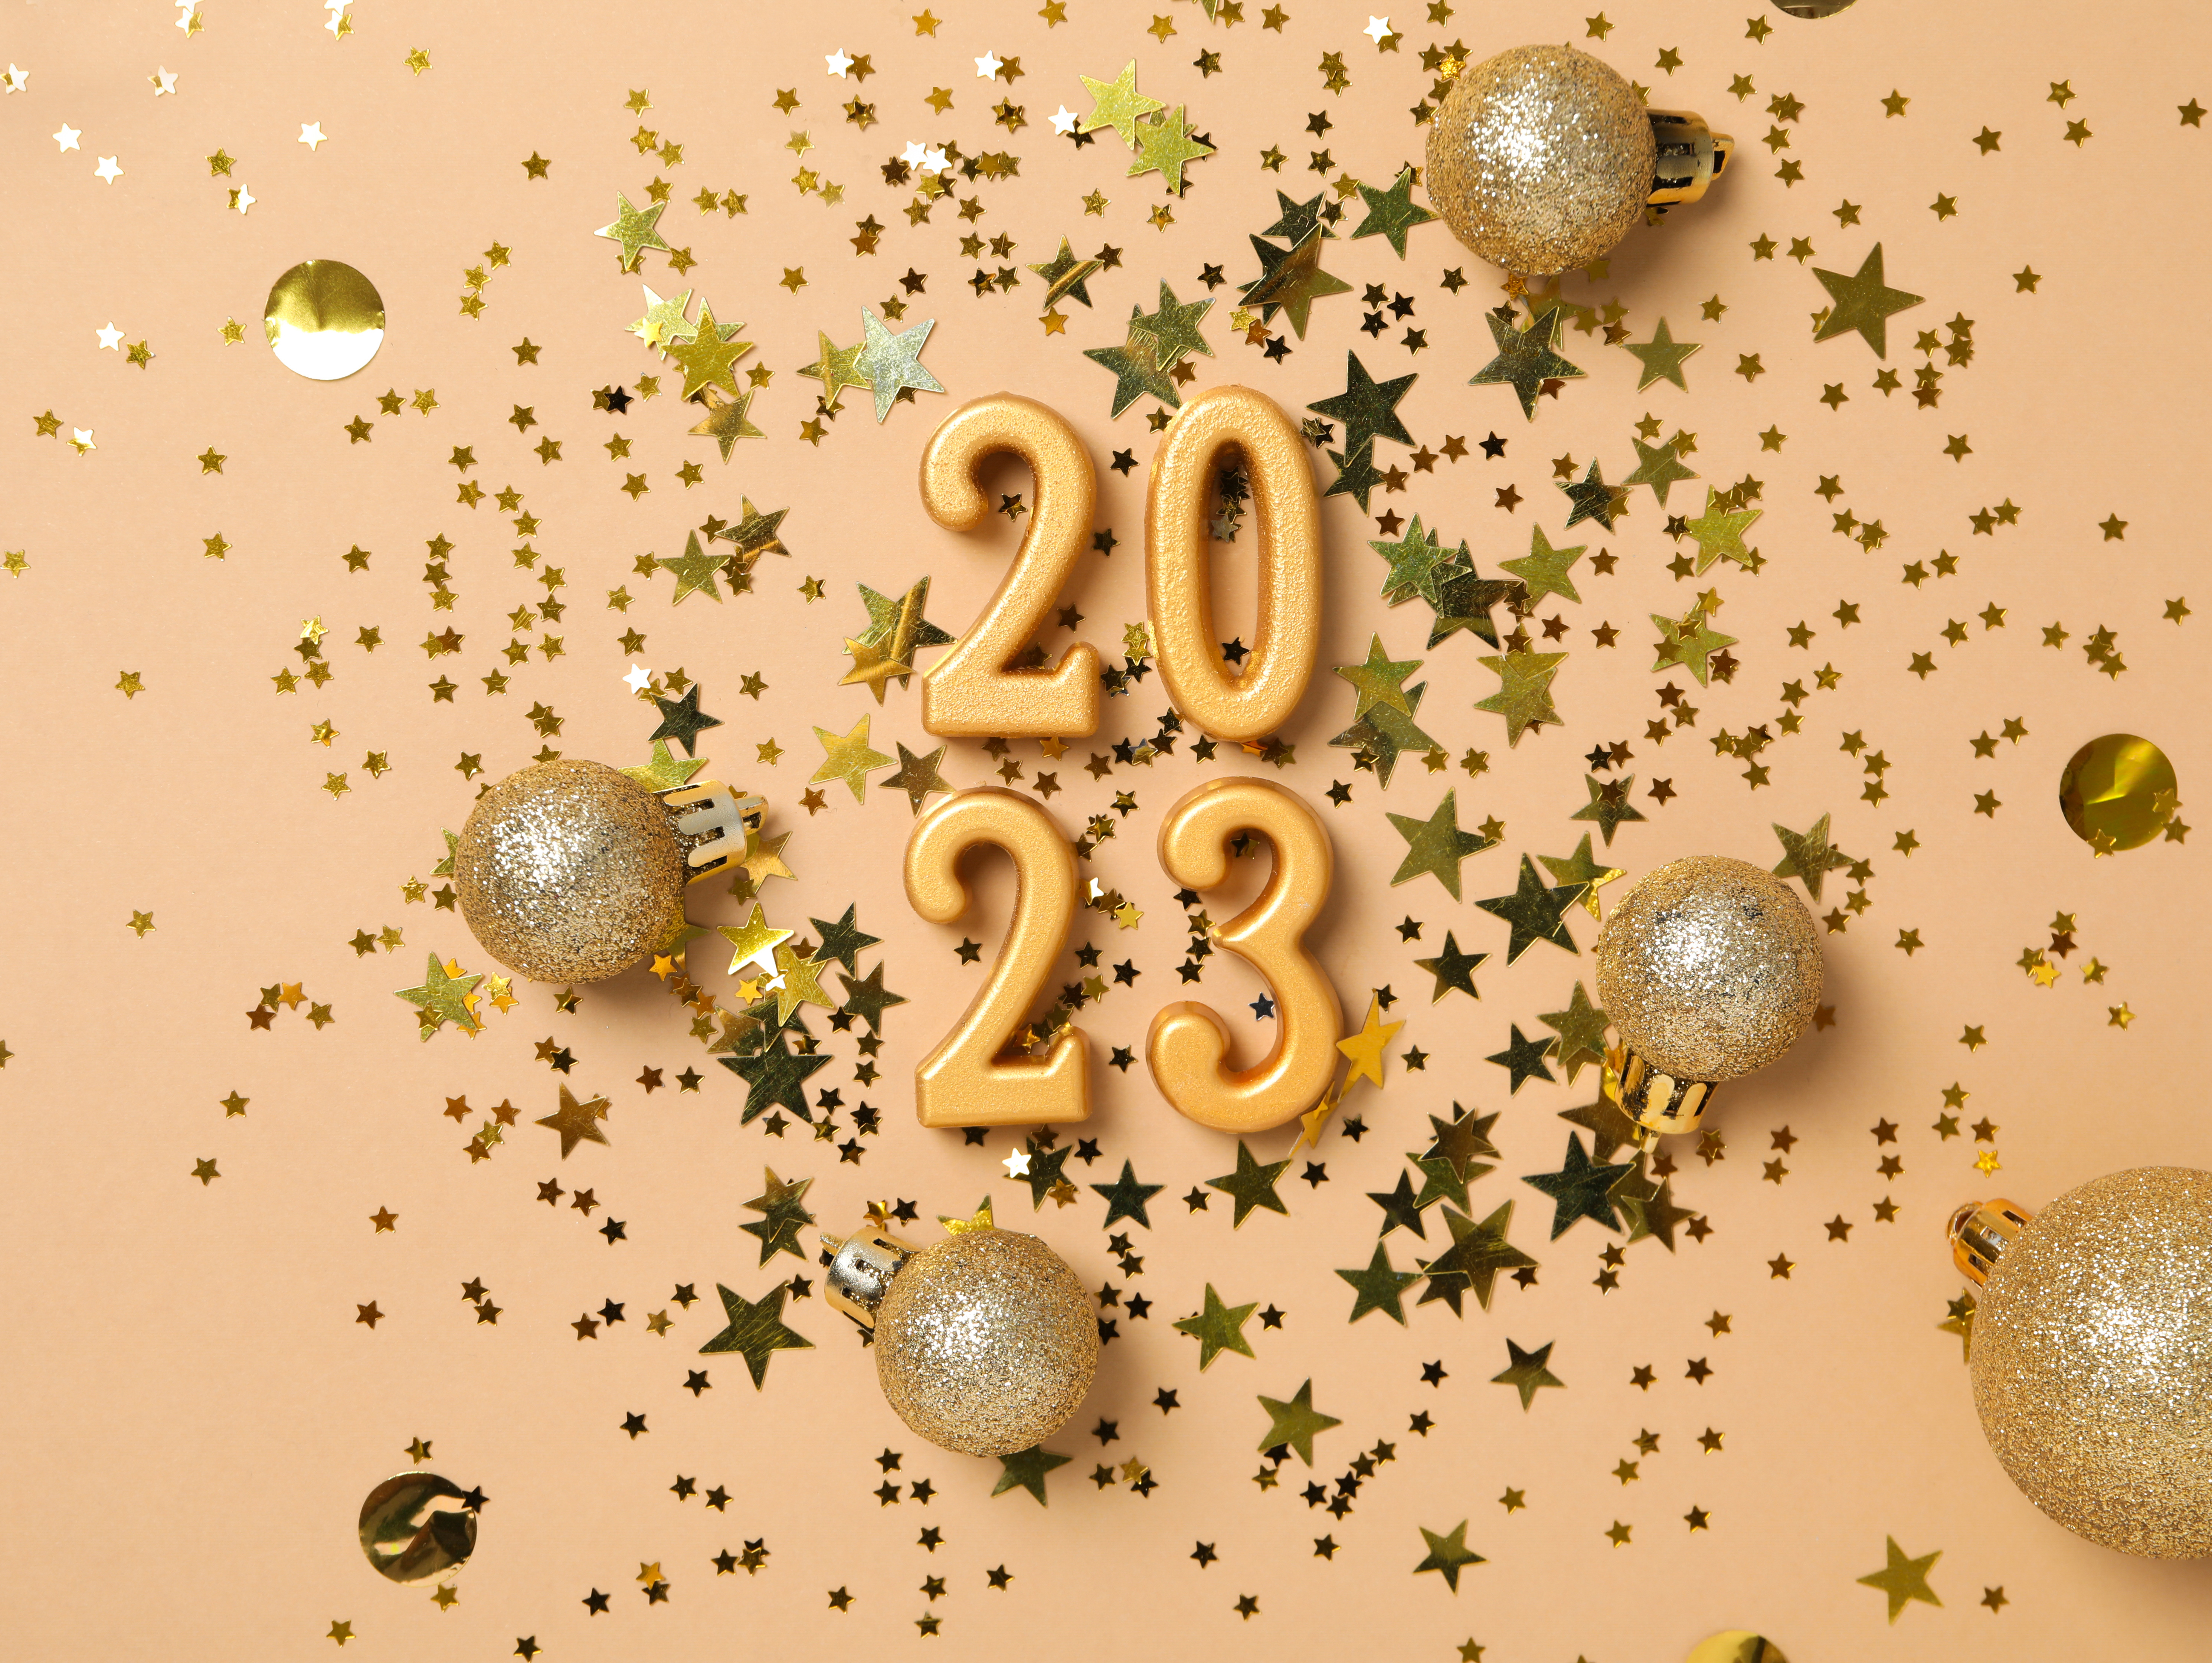 Hình nền năm mới 2024, chúc mừng năm mới, lễ kỷ niệm/năm mới sẽ mang đến cho bạn niềm vui và sự cảm thông. Hãy cùng chọn những hình ảnh tươi sáng, đầy màu sắc để trang trí màn hình của bạn và chia sẻ những lời chúc tốt đẹp nhất đến mọi người xung quanh.